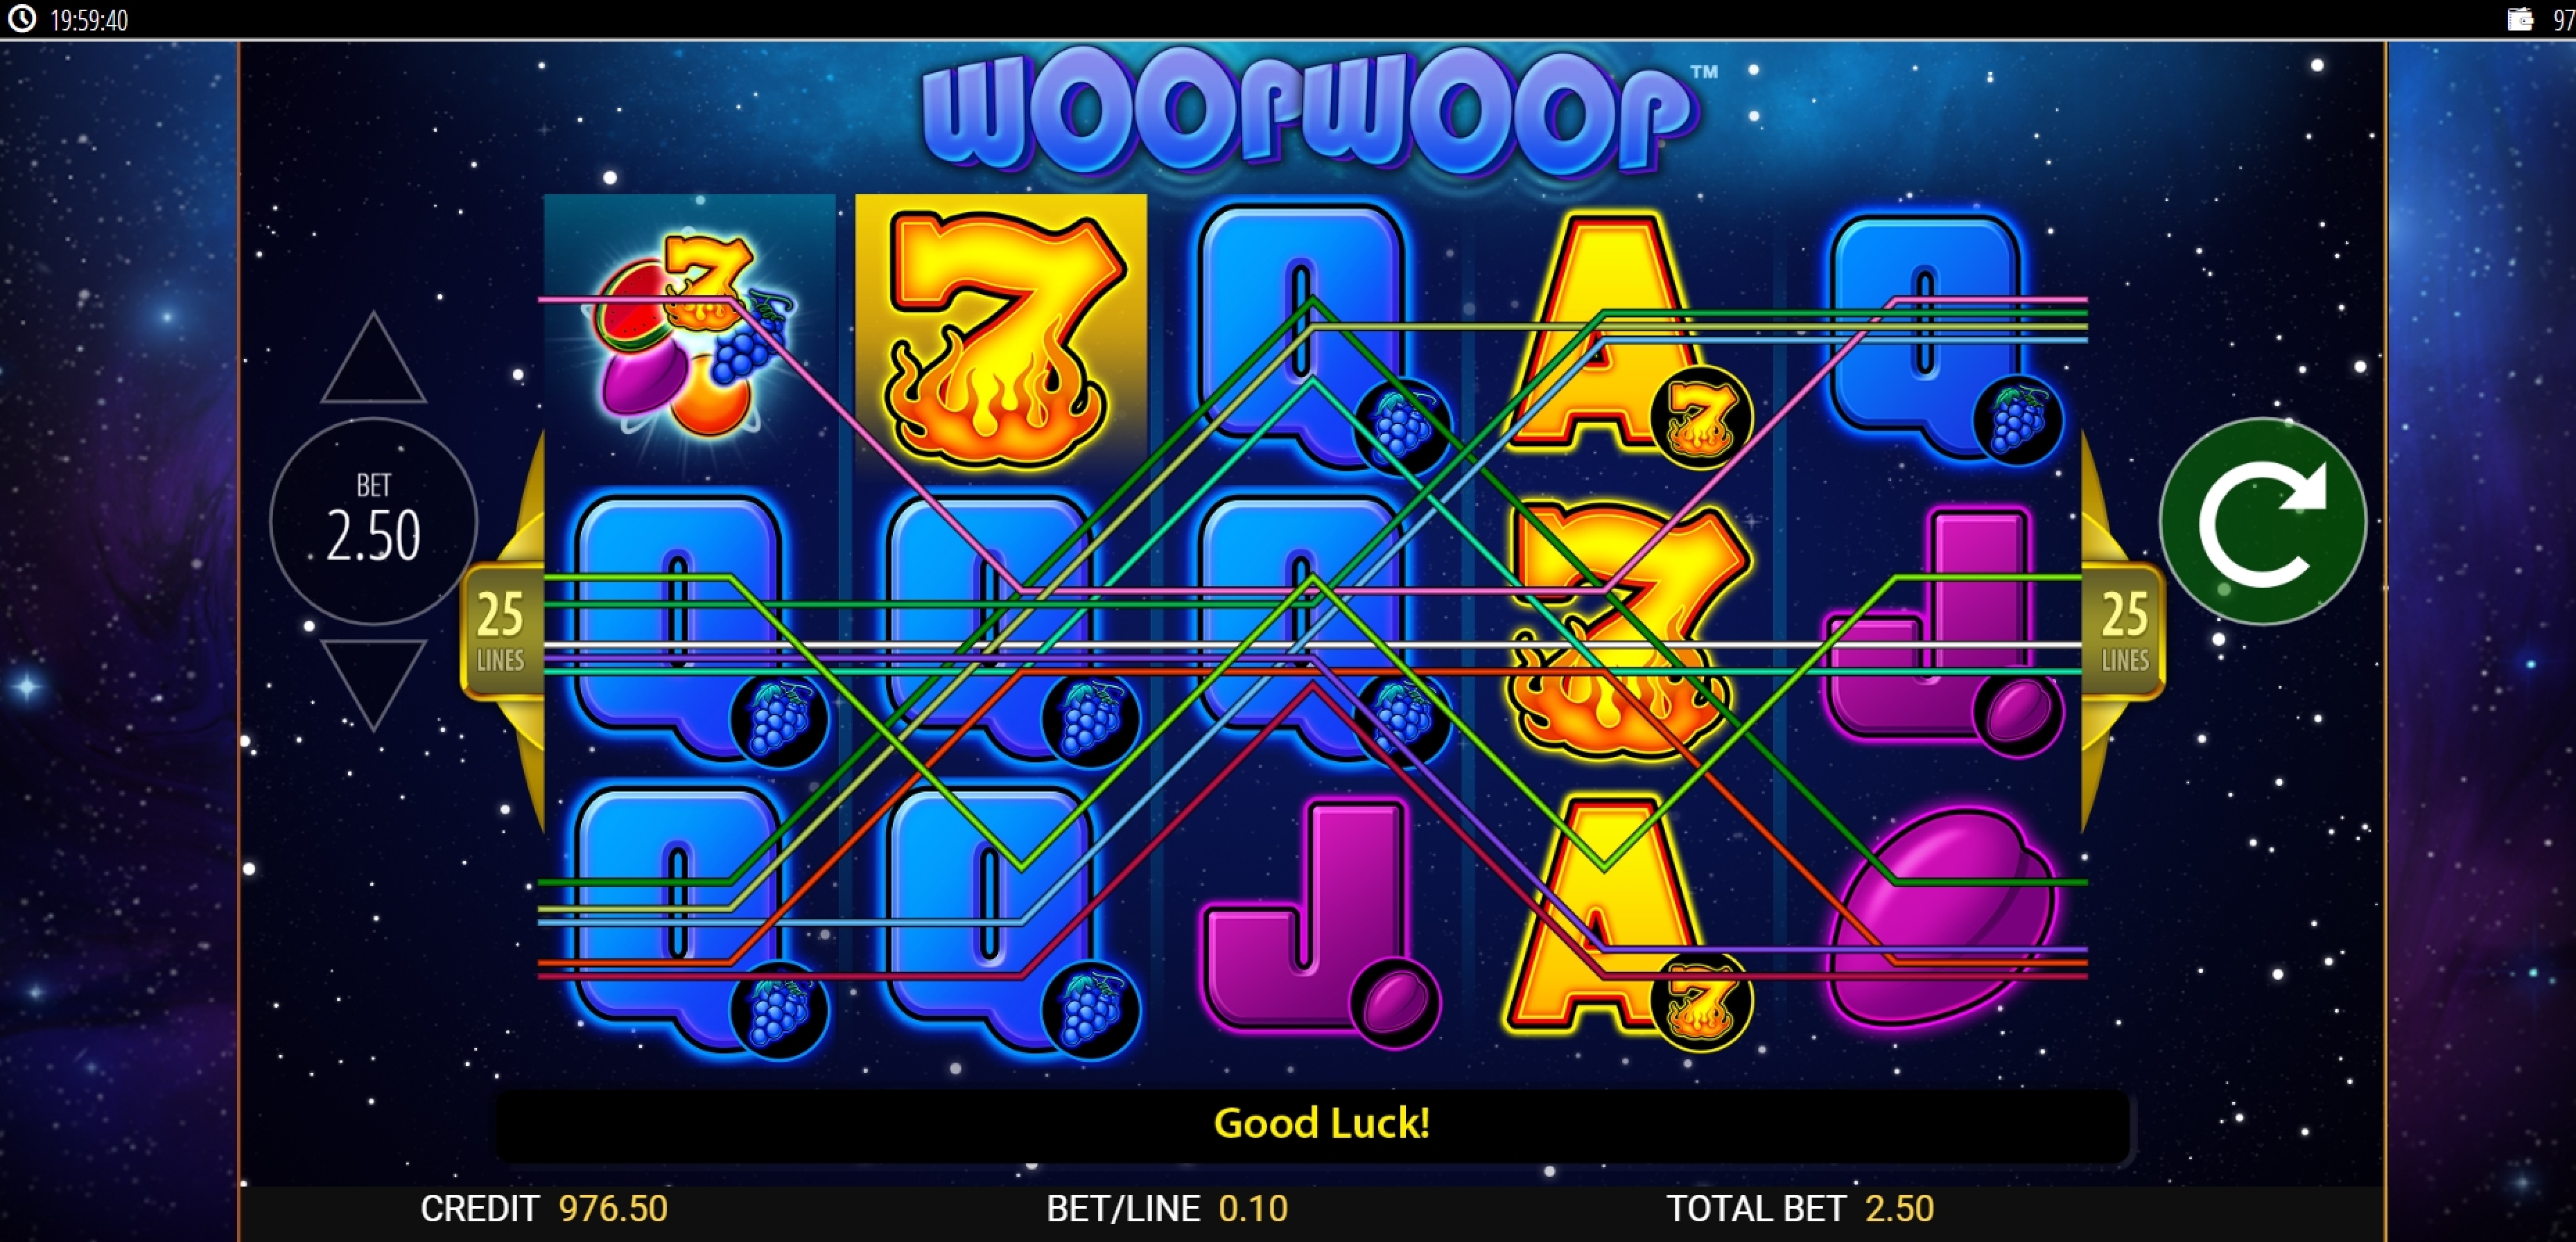 Win Money in Woop Woop Free Slot Game by Reel Time Gaming